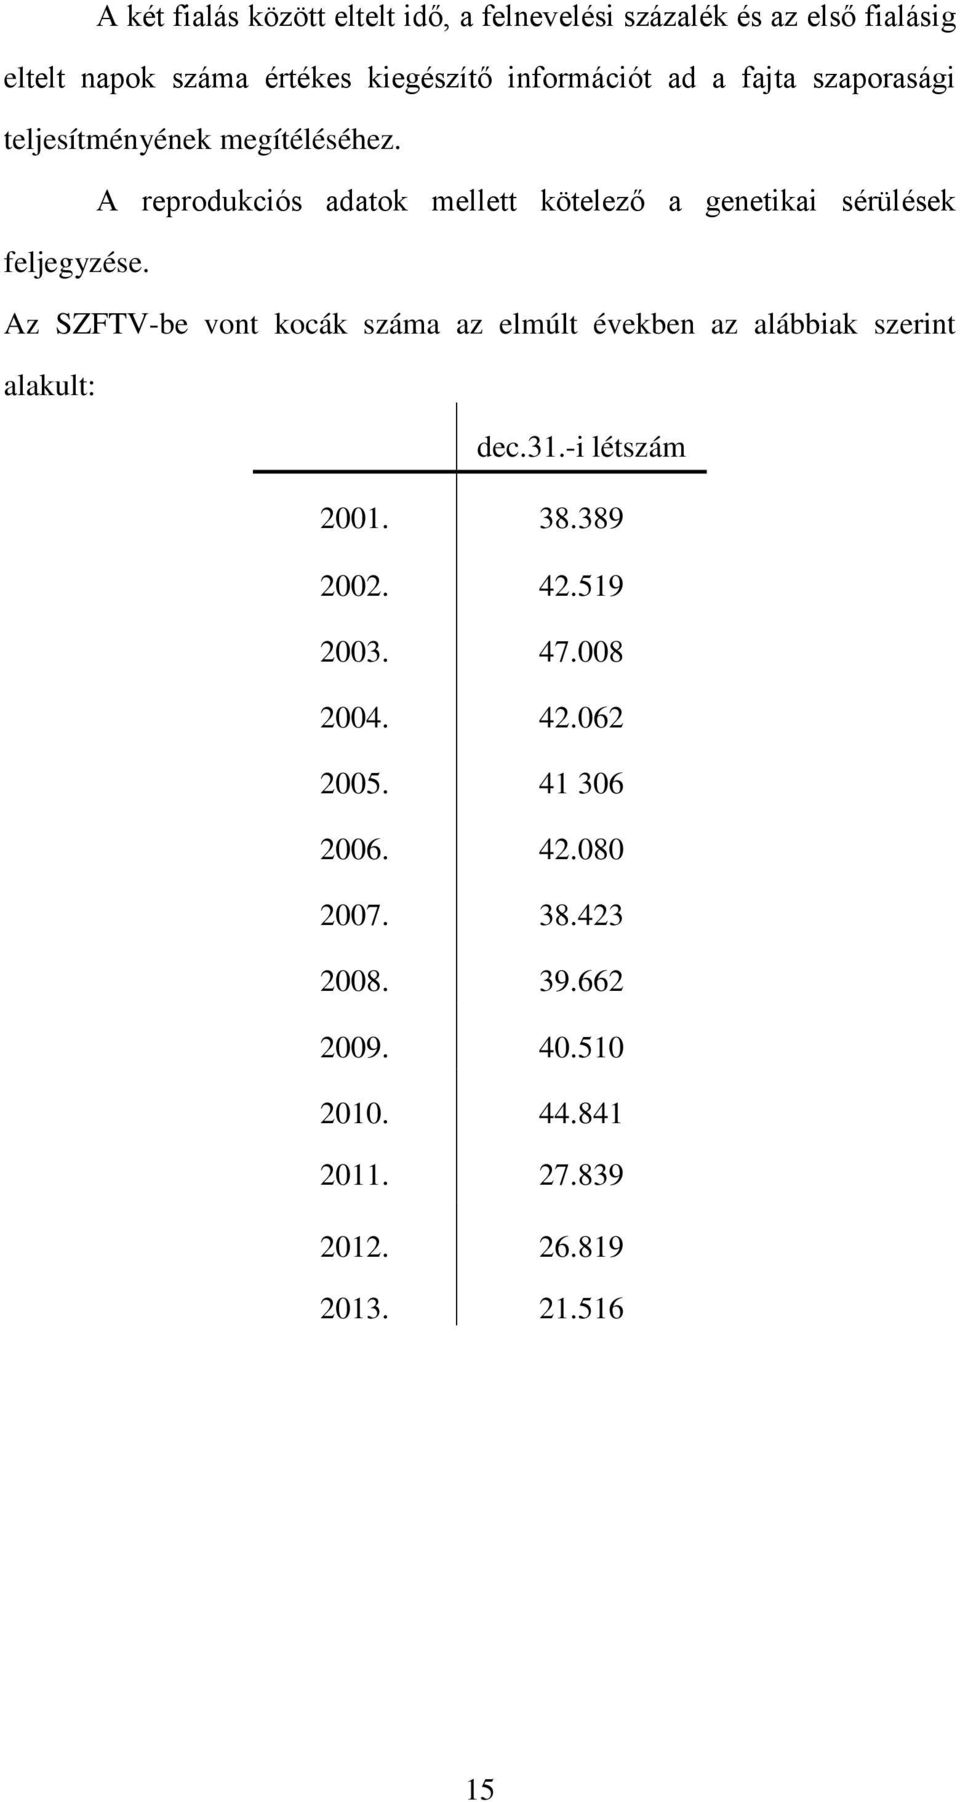 Az SZFTV-be vont kocák az elmúlt években az alábbiak szerint alakult: dec.31.-i létszám 2001. 38.389 2002. 42.519 2003. 47.